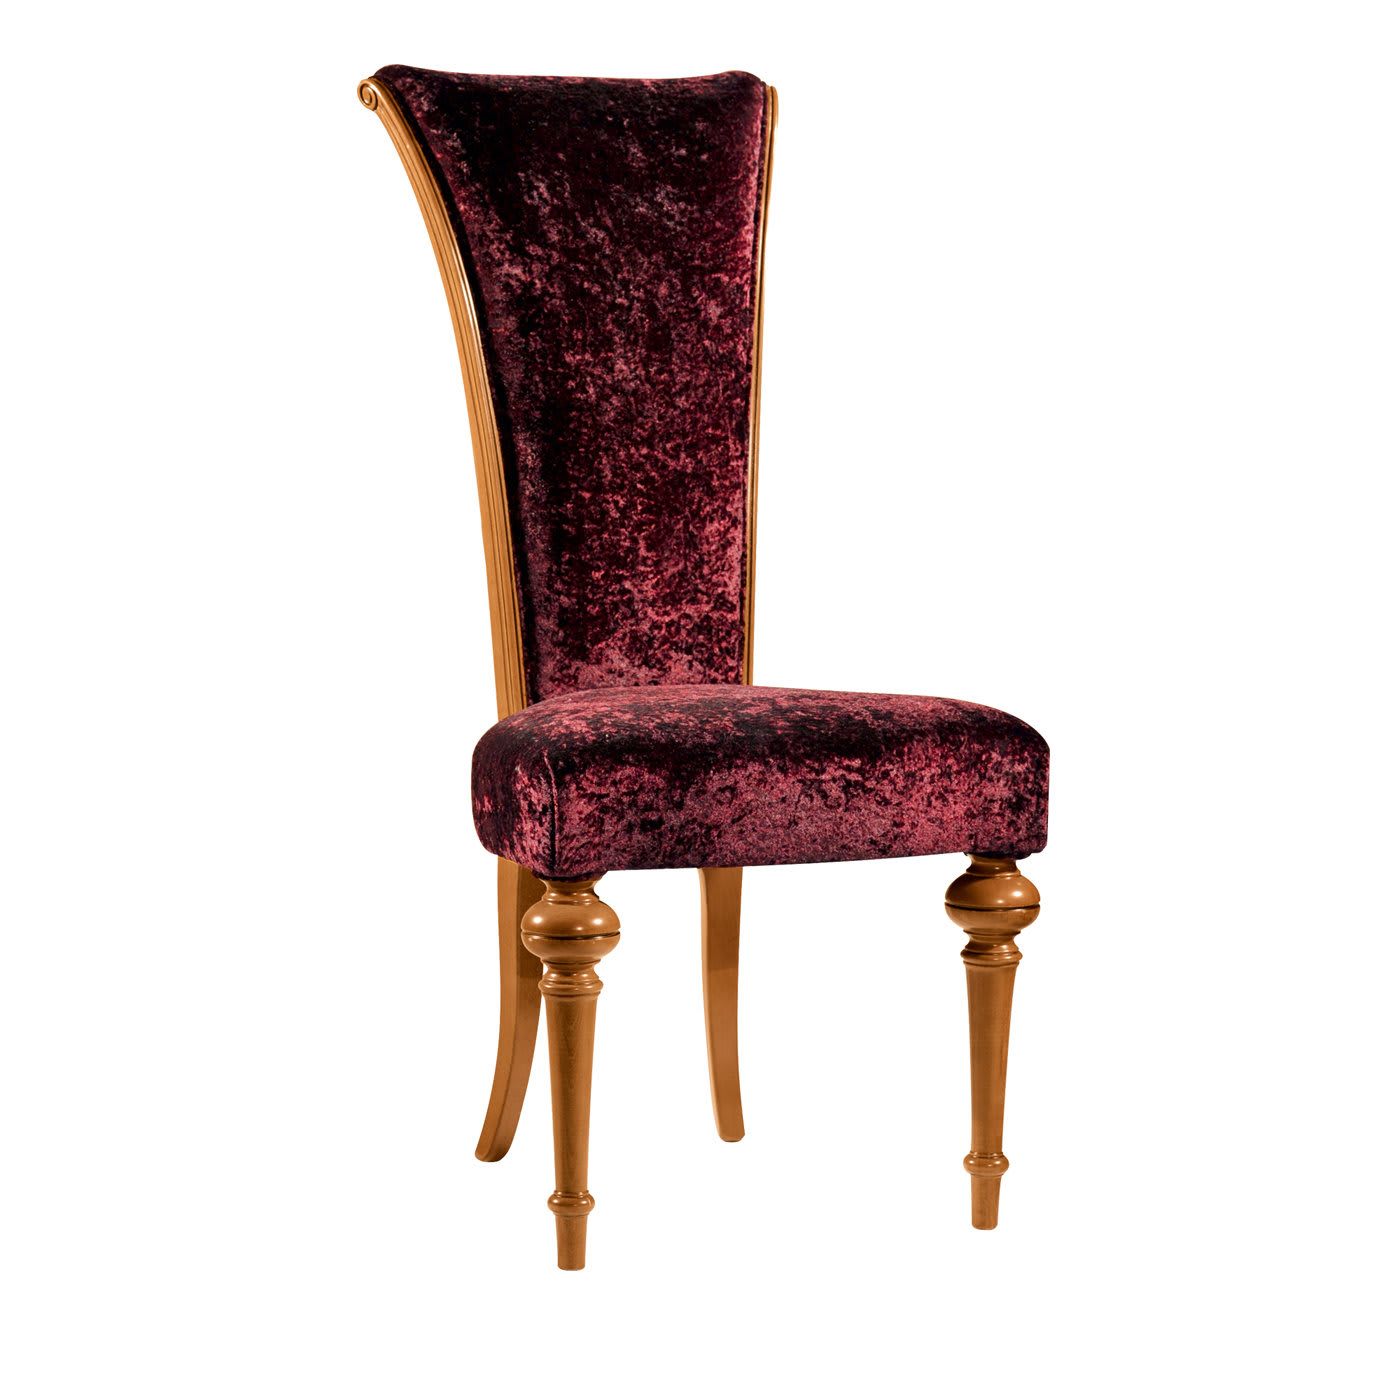 Capotavola Red Velvet Chair - Modenese Gastone